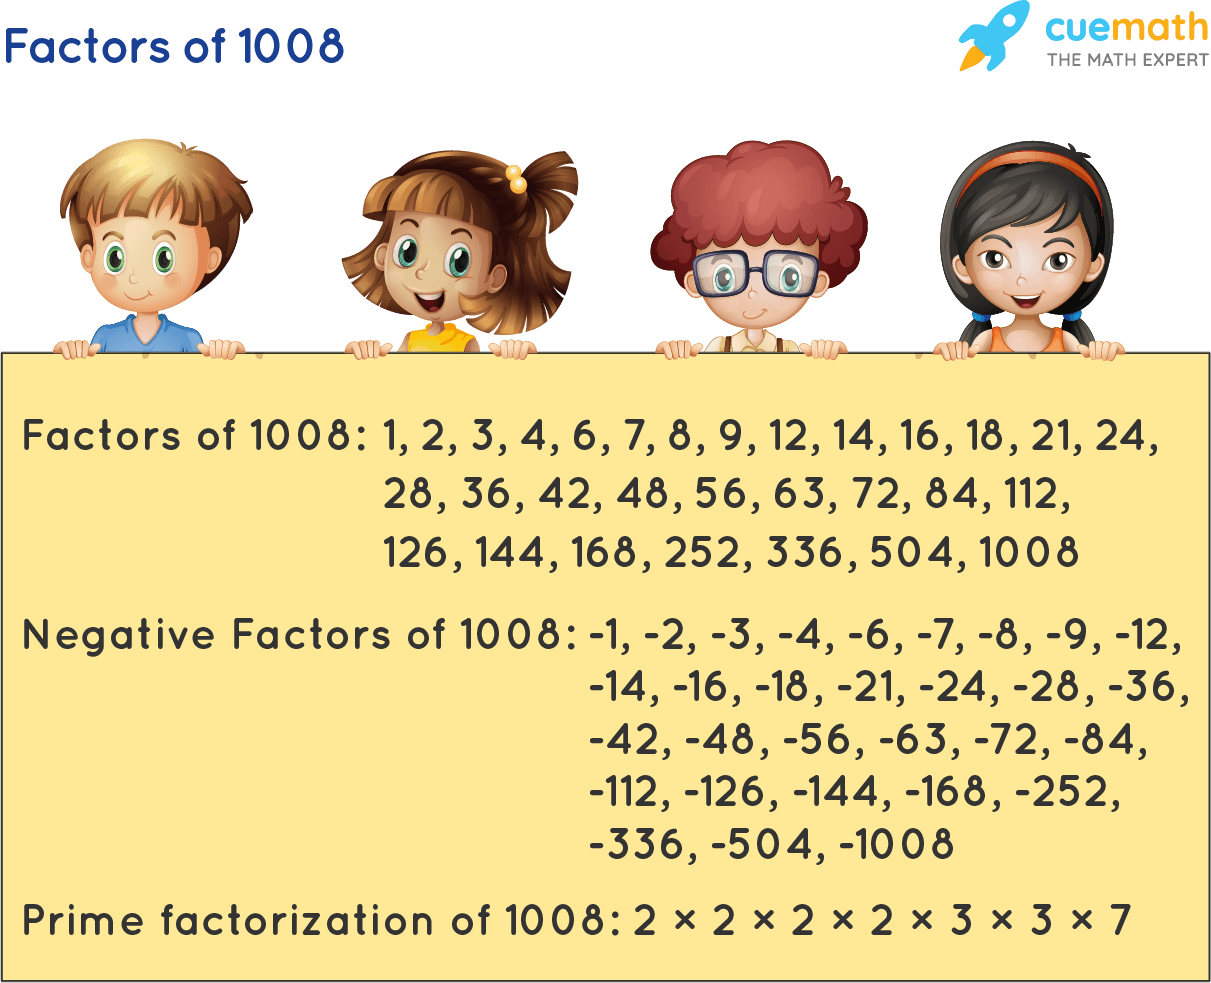 Factors of 1008